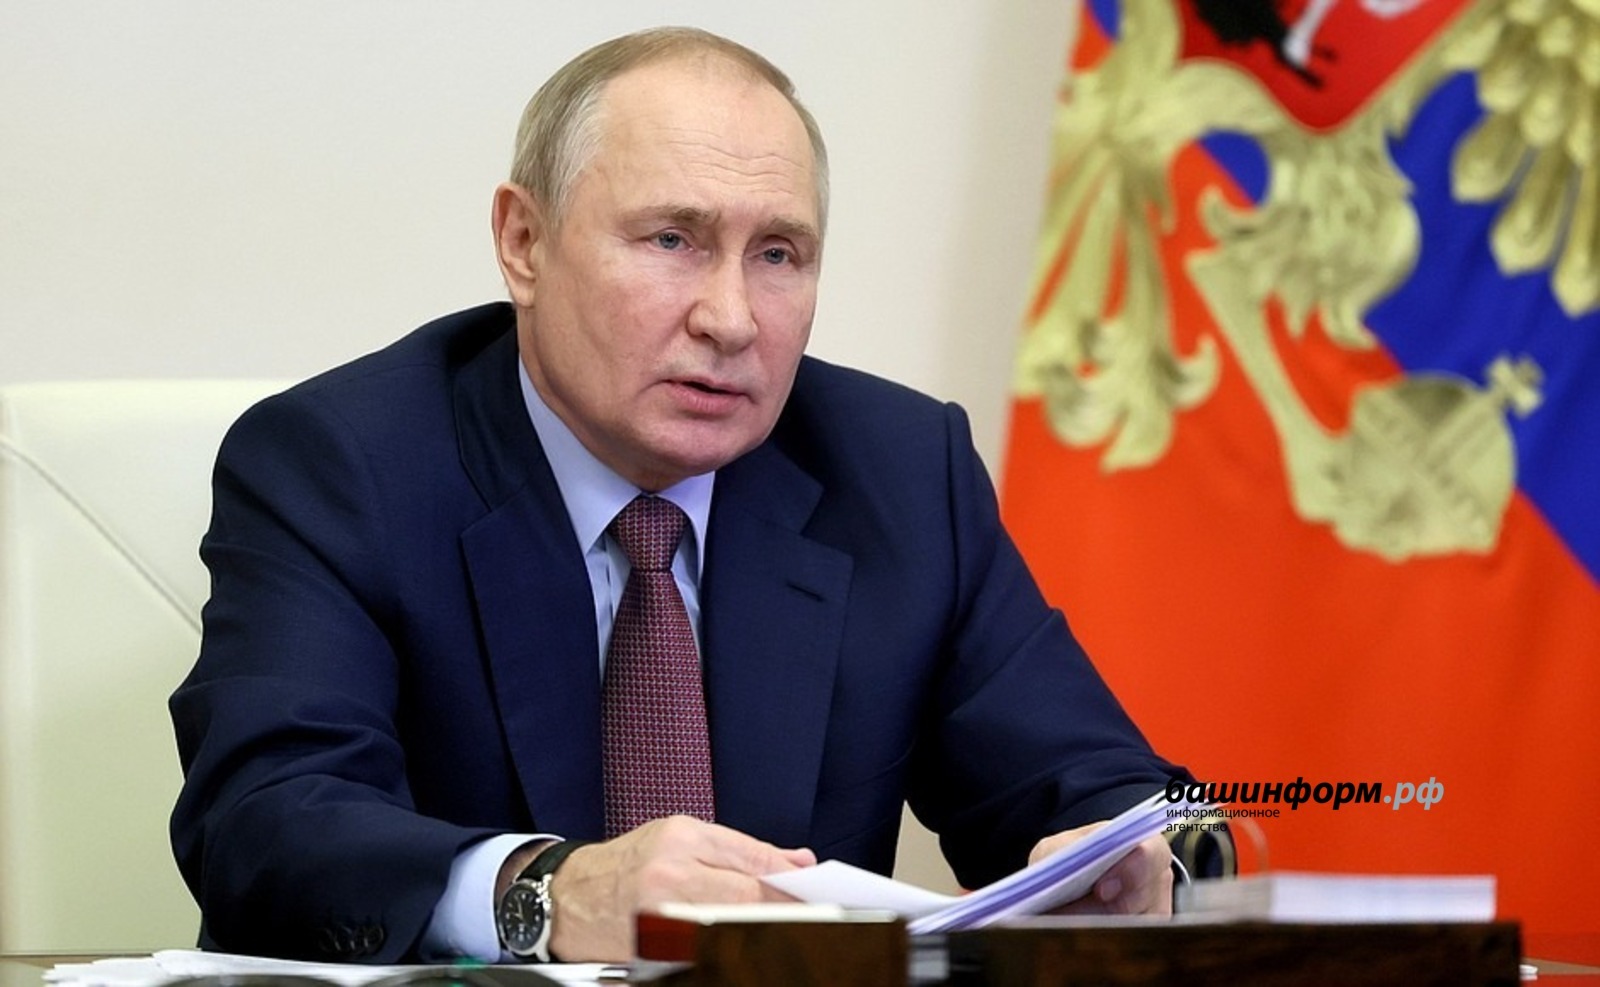 О начале возведения в Башкирии межвузовского кампуса сообщил Владимир Путин